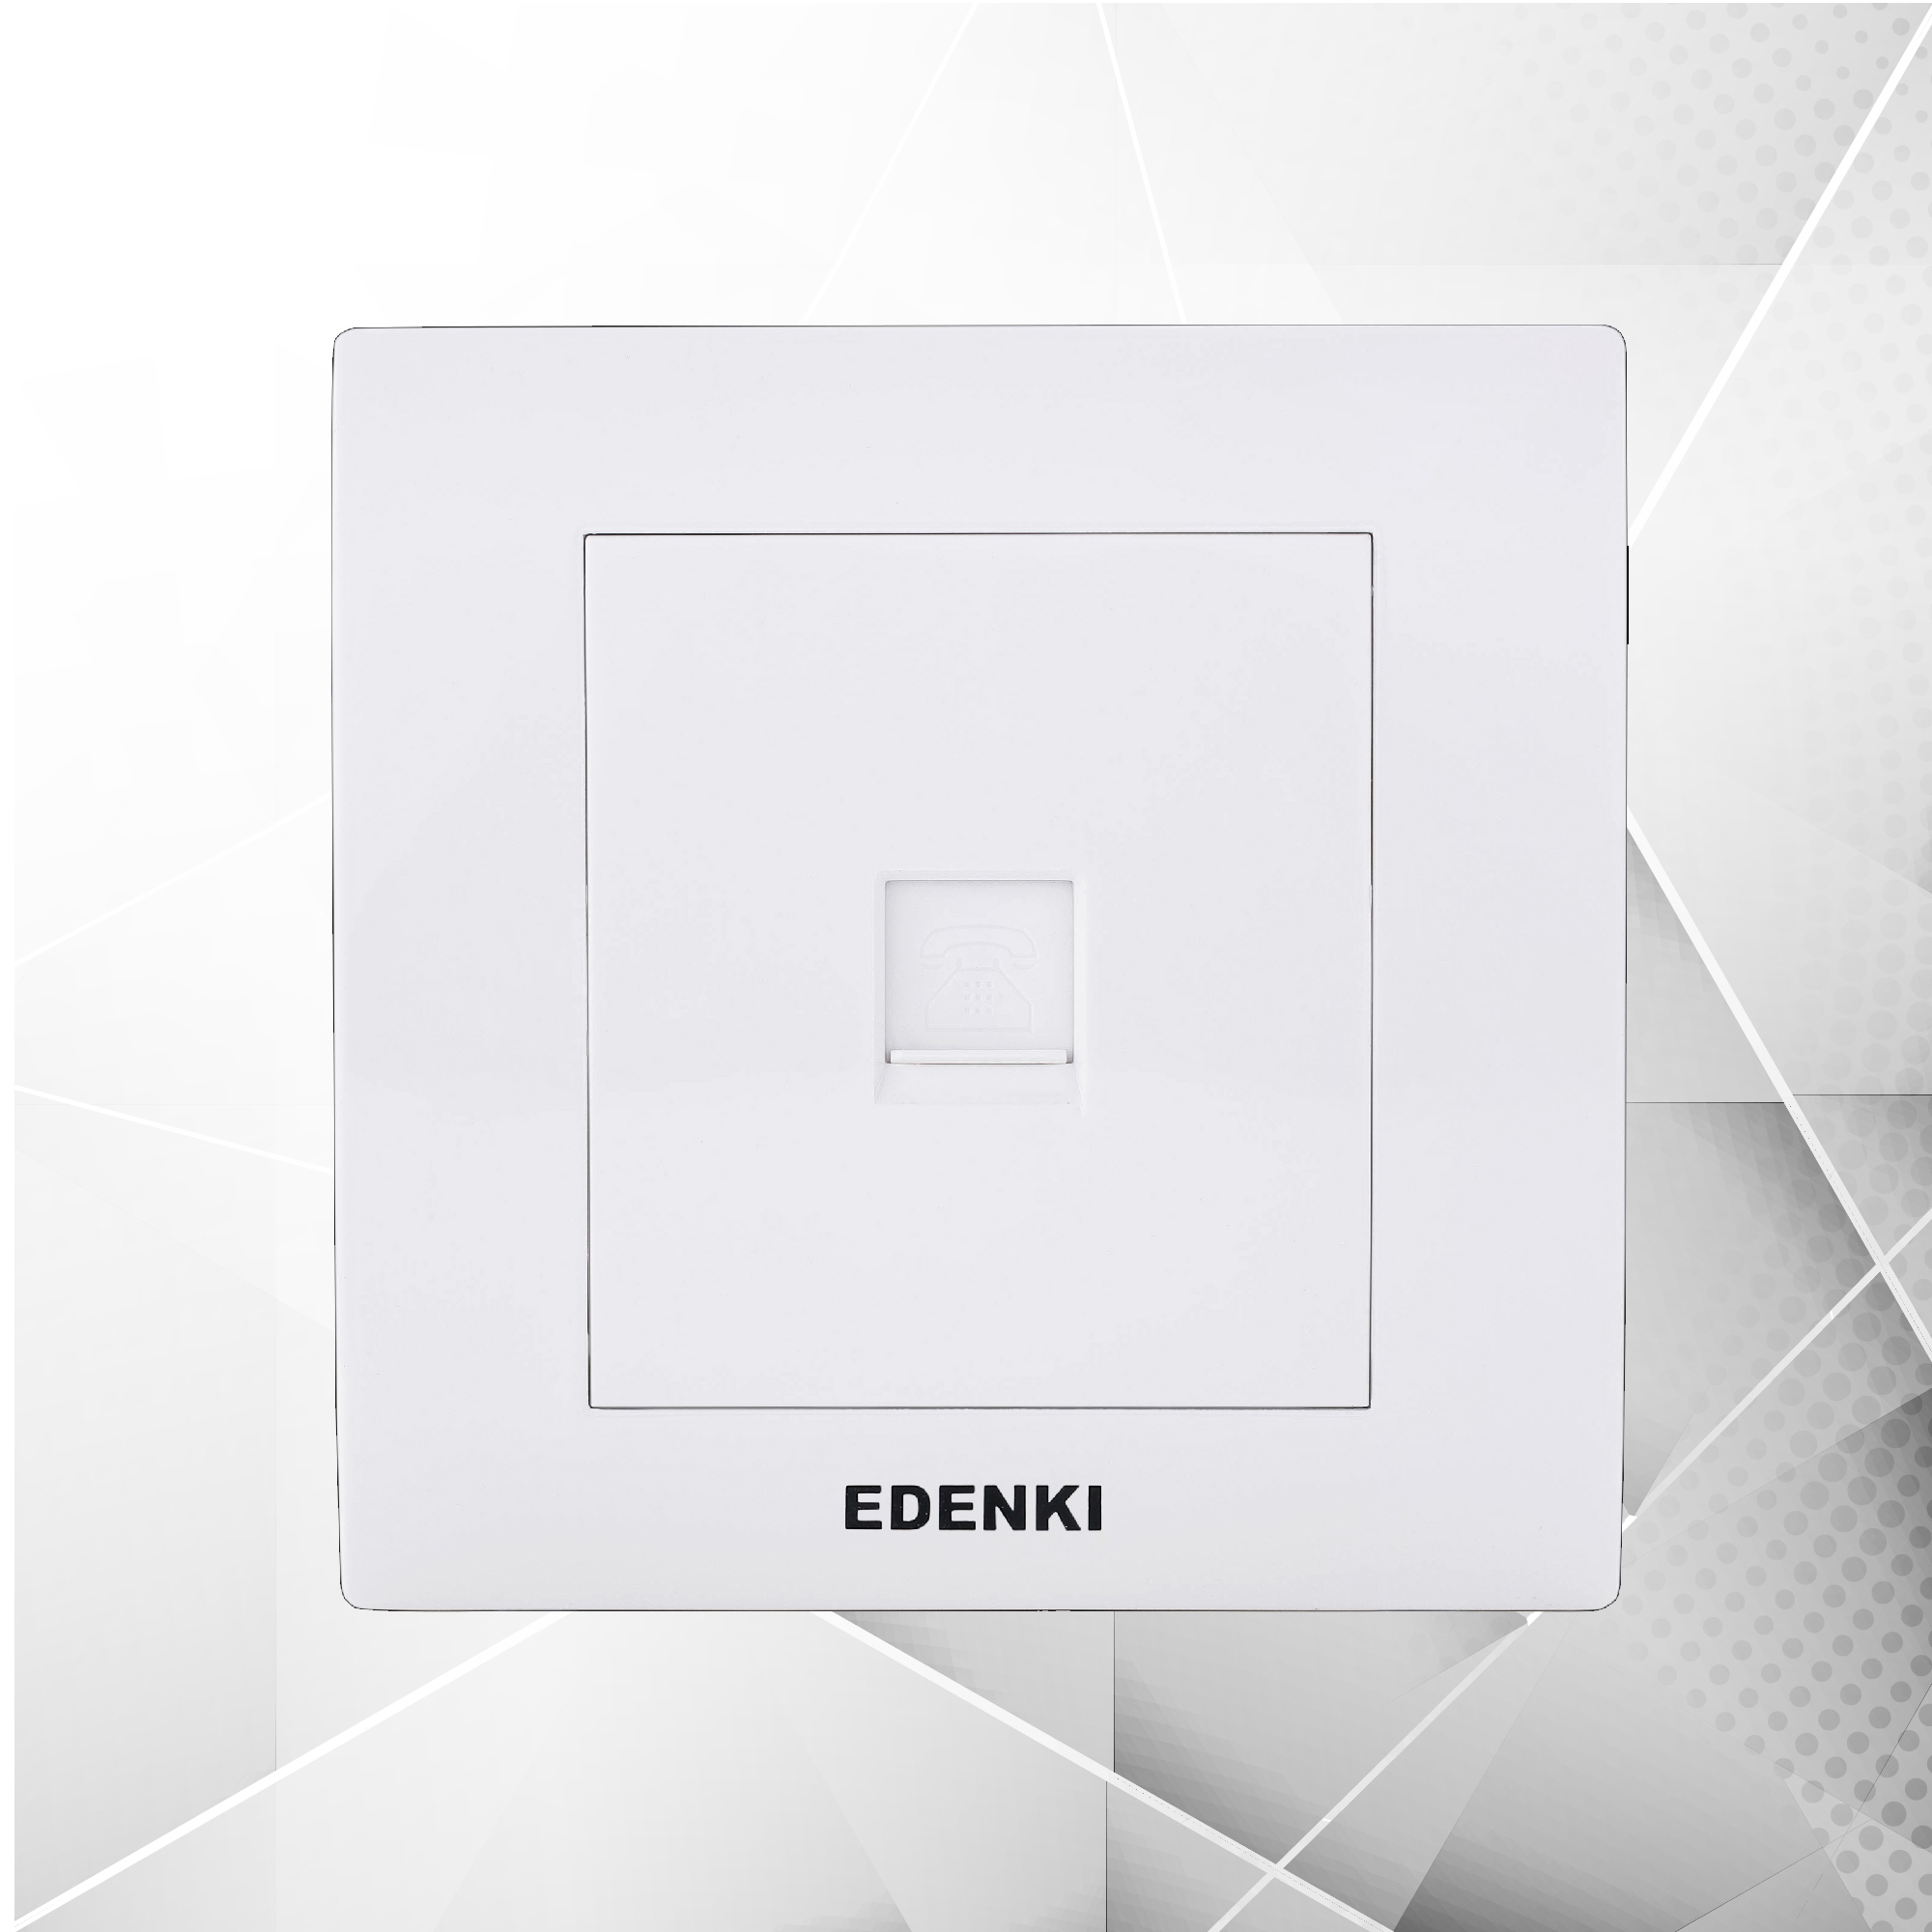 Bộ ổ cắm điện thoại đơn Edenki EC-T01